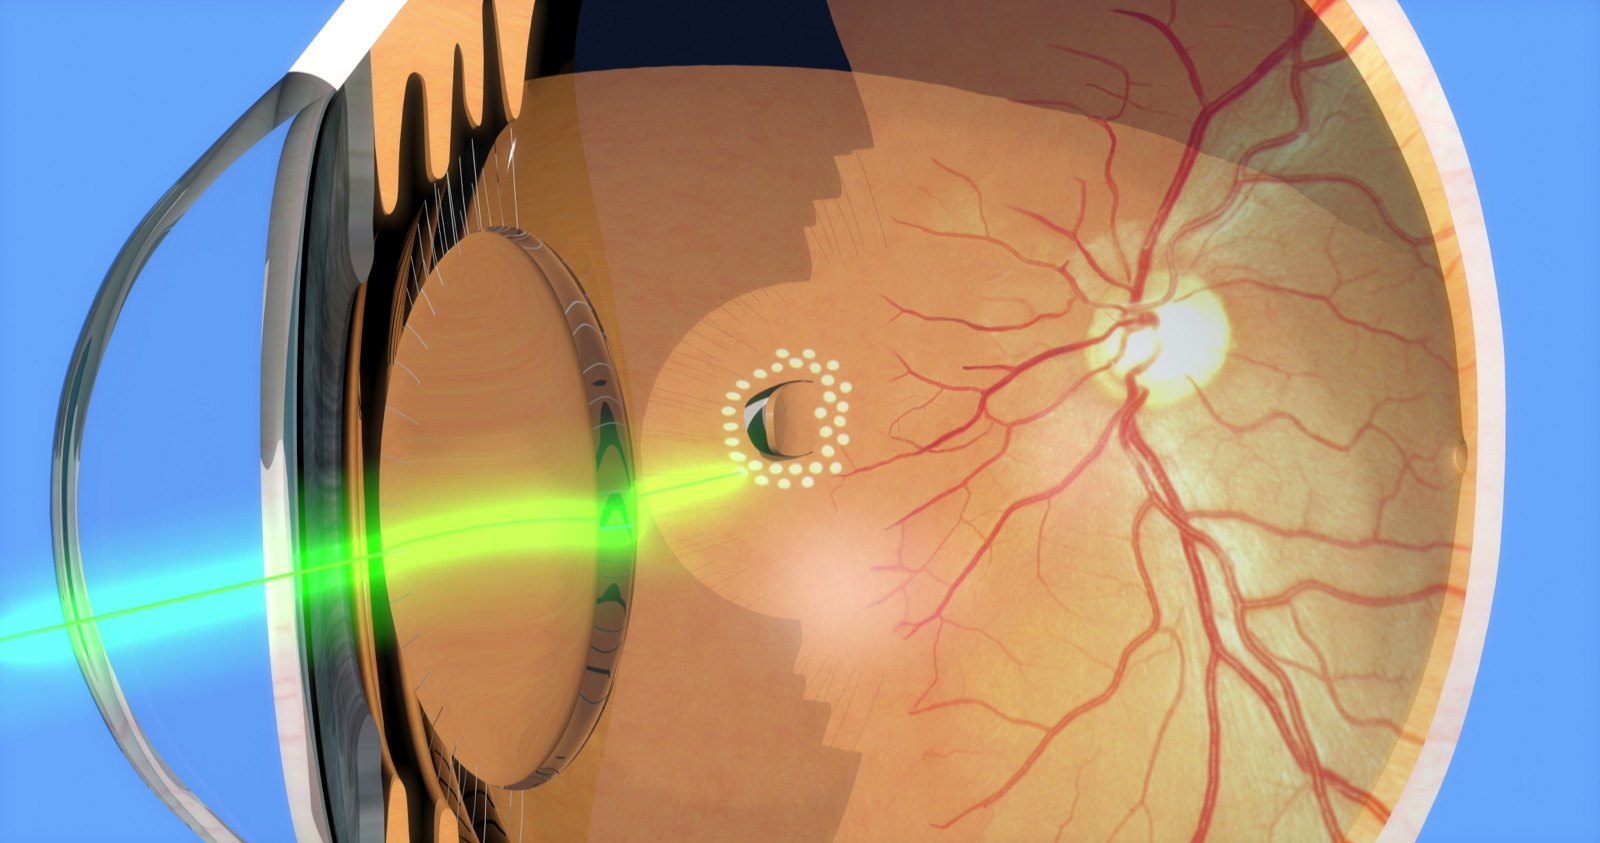 视网膜裂孔激光图片